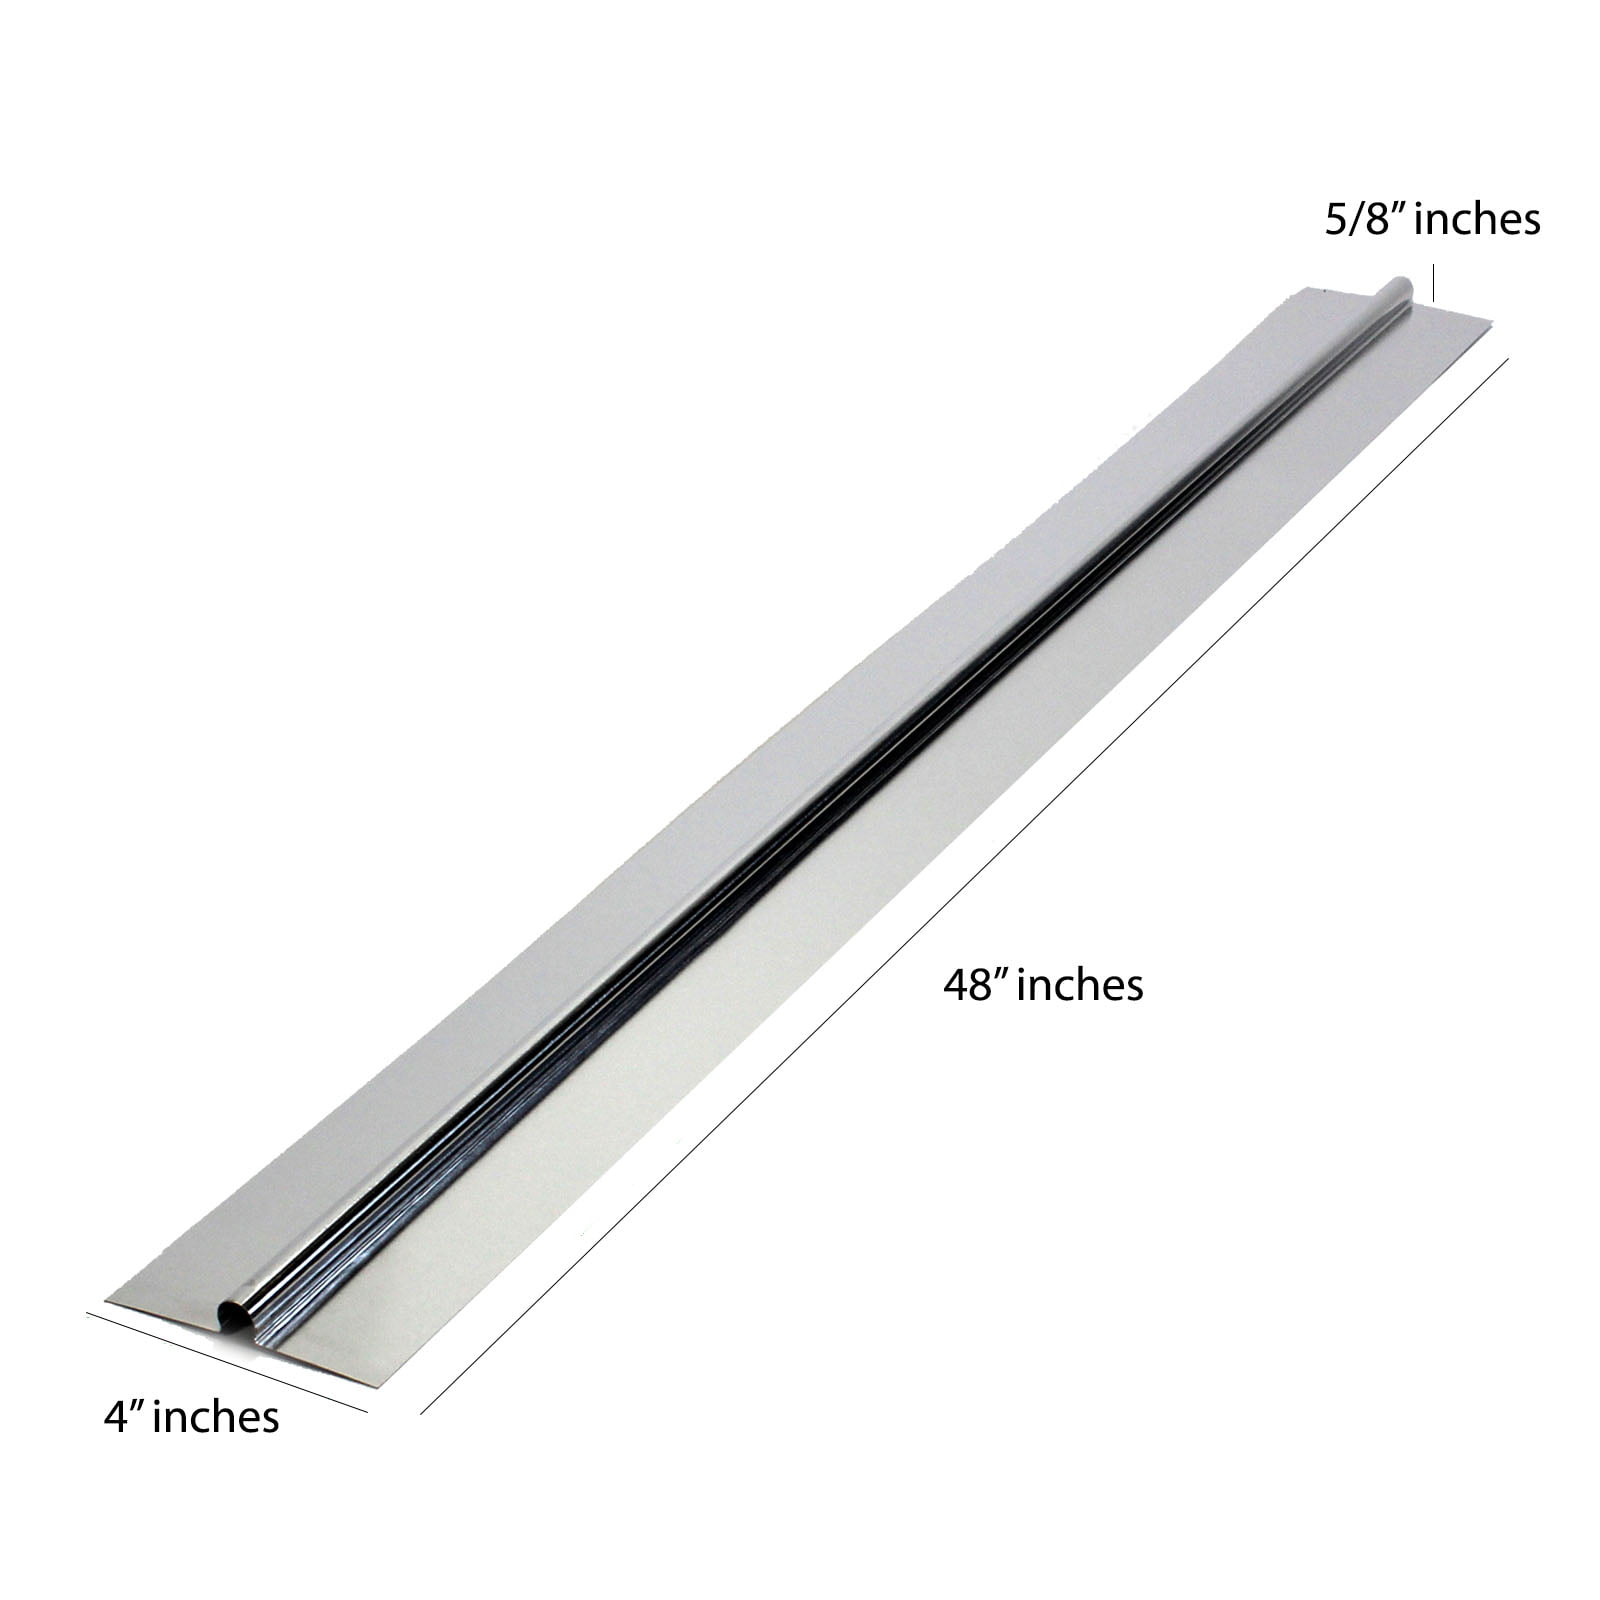 125-4' Aluminum Radiant Floor Heat Transfer Plates for 1/2" Pex Tubing 